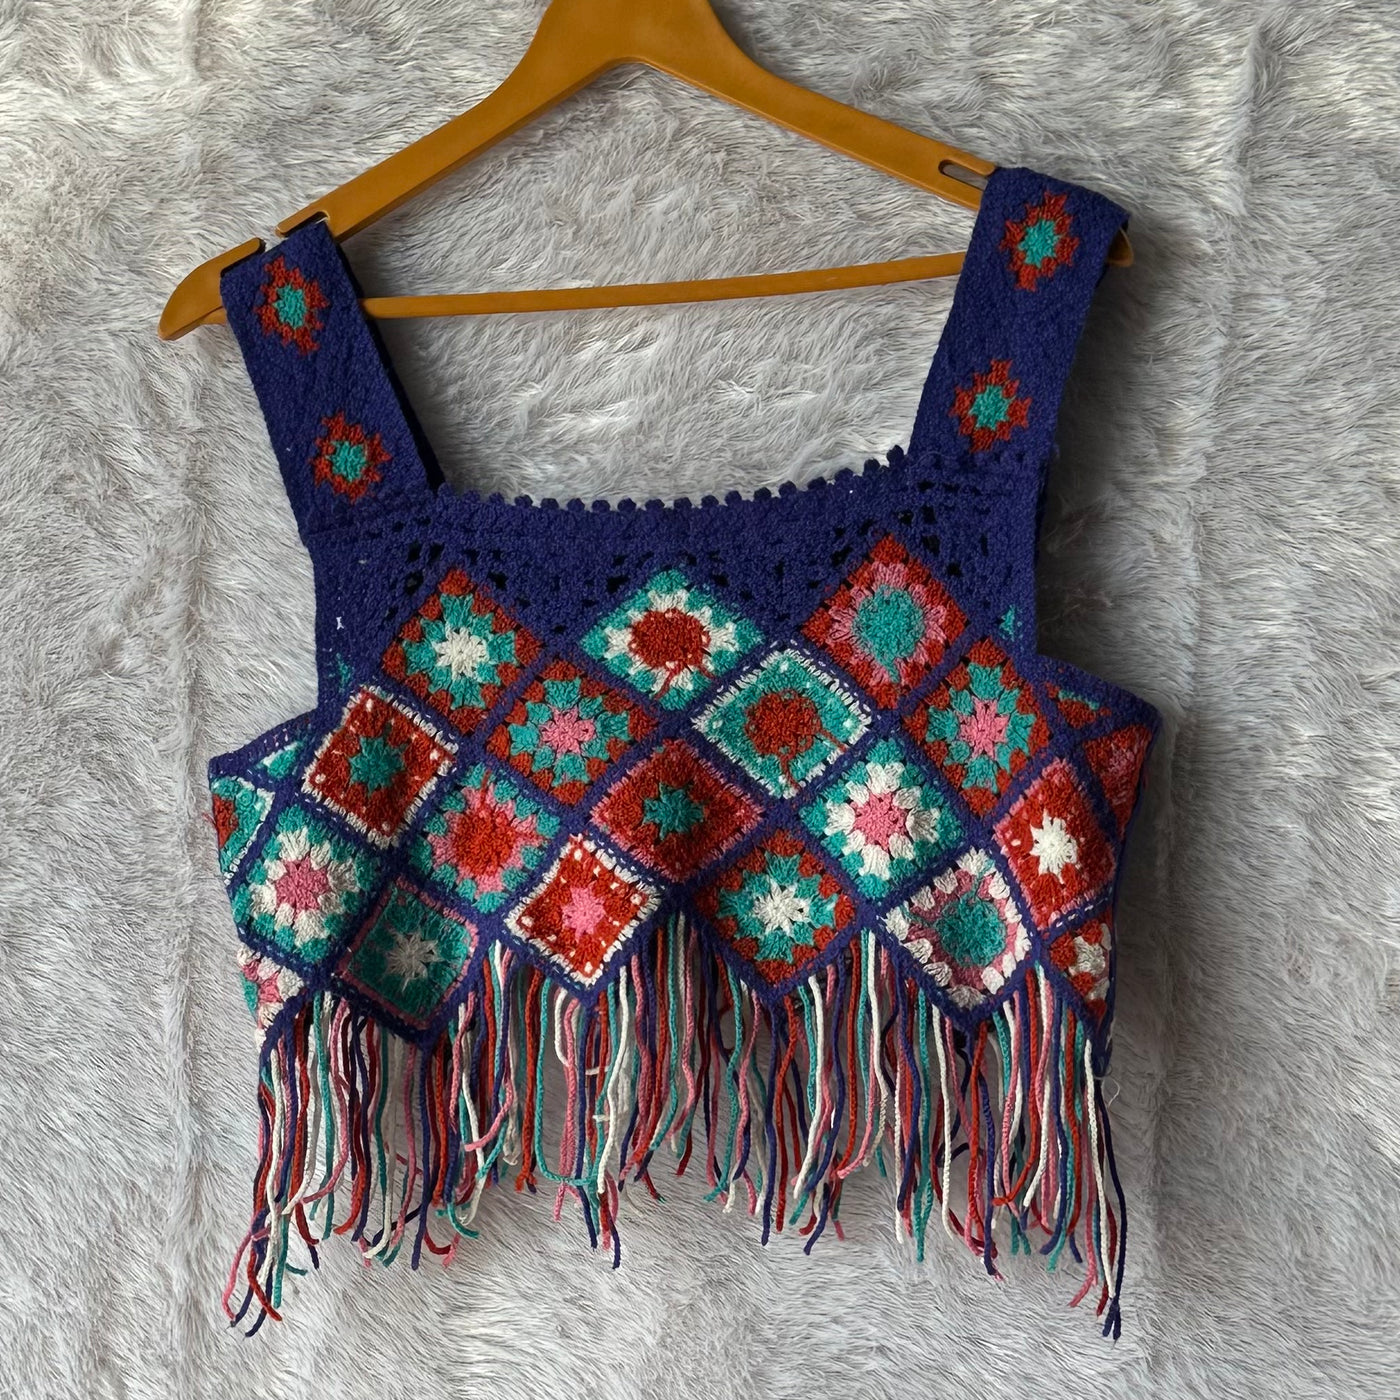 Taking some Mey-konos time:
 crochet top